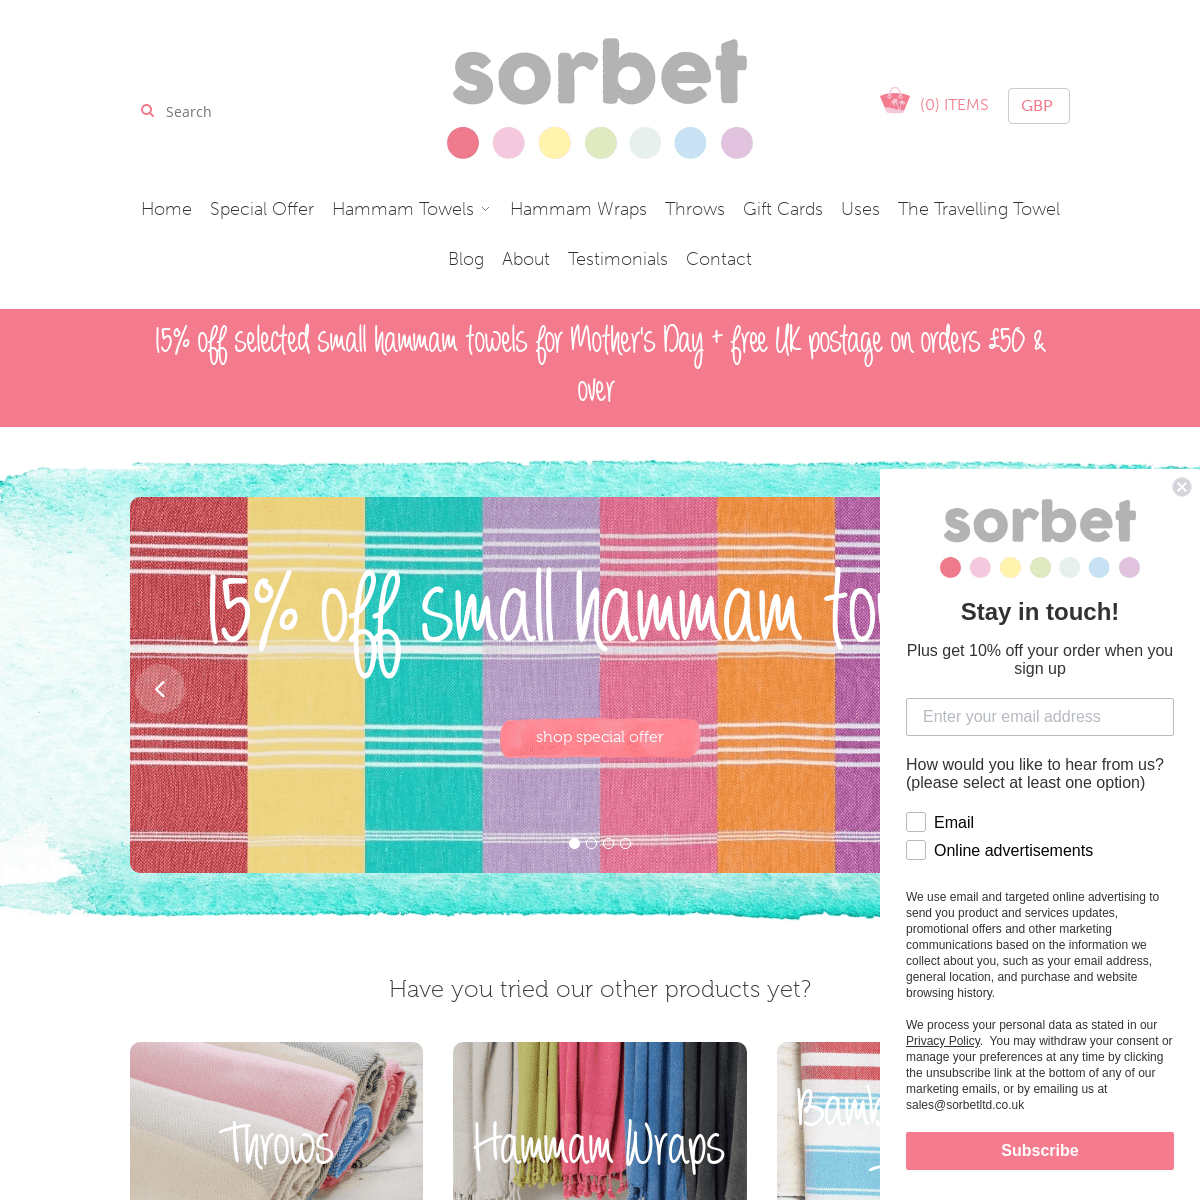 A complete backup of sorbetltd.co.uk